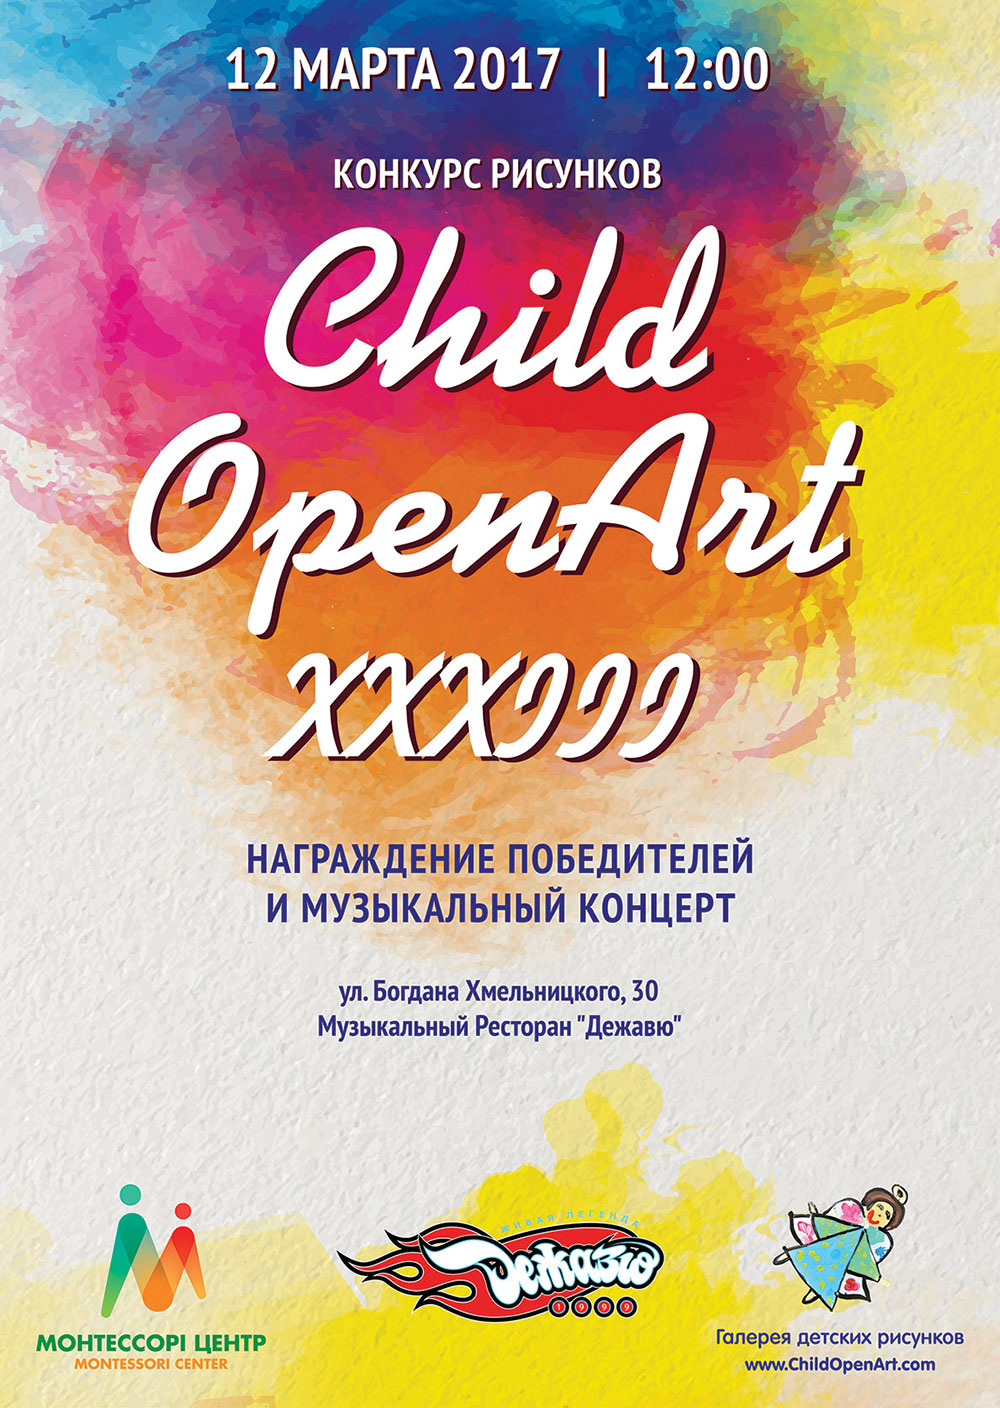 Конкурс рисунков ChildOpenArt - 33